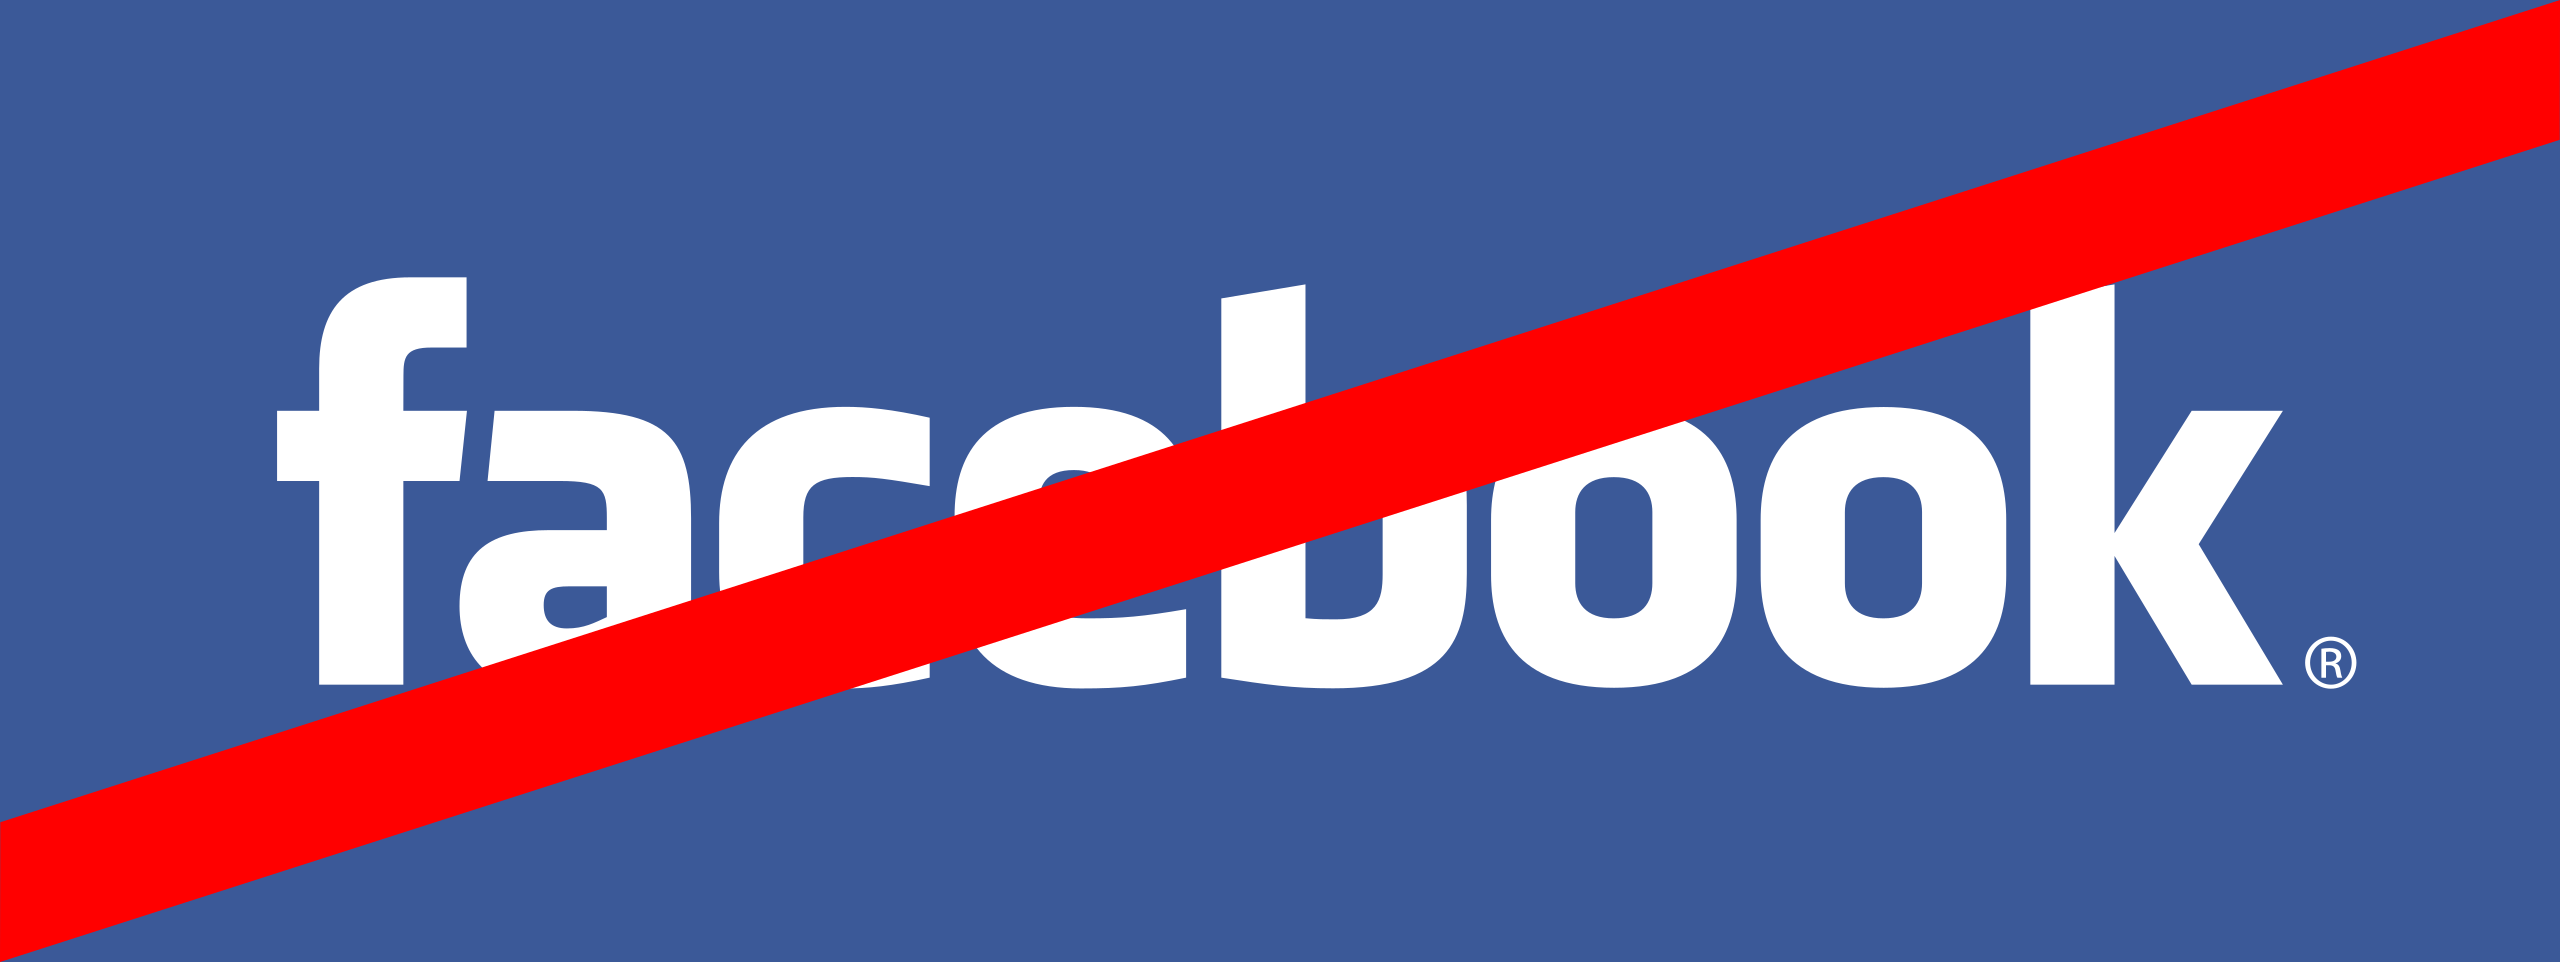 No Facebook. Анти Facebook. Facebook в России. Facebook Russia. Фейсбук запрещен в россии или нет